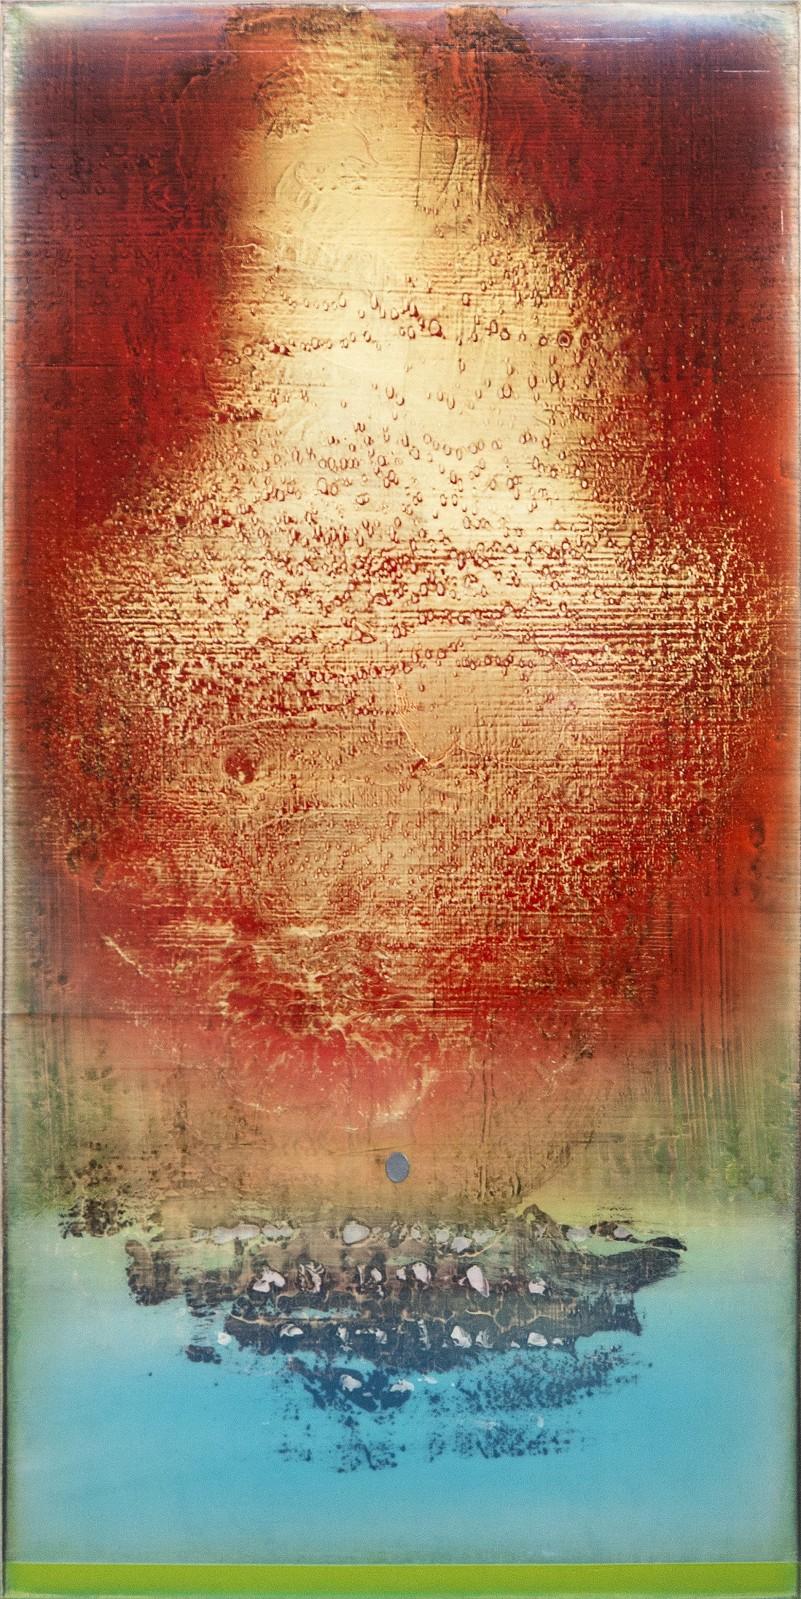 Abstract Painting Alice Teichert - Let There Be Love - abstrait, lyrique, gestuel, acrylique sur toile, coloré